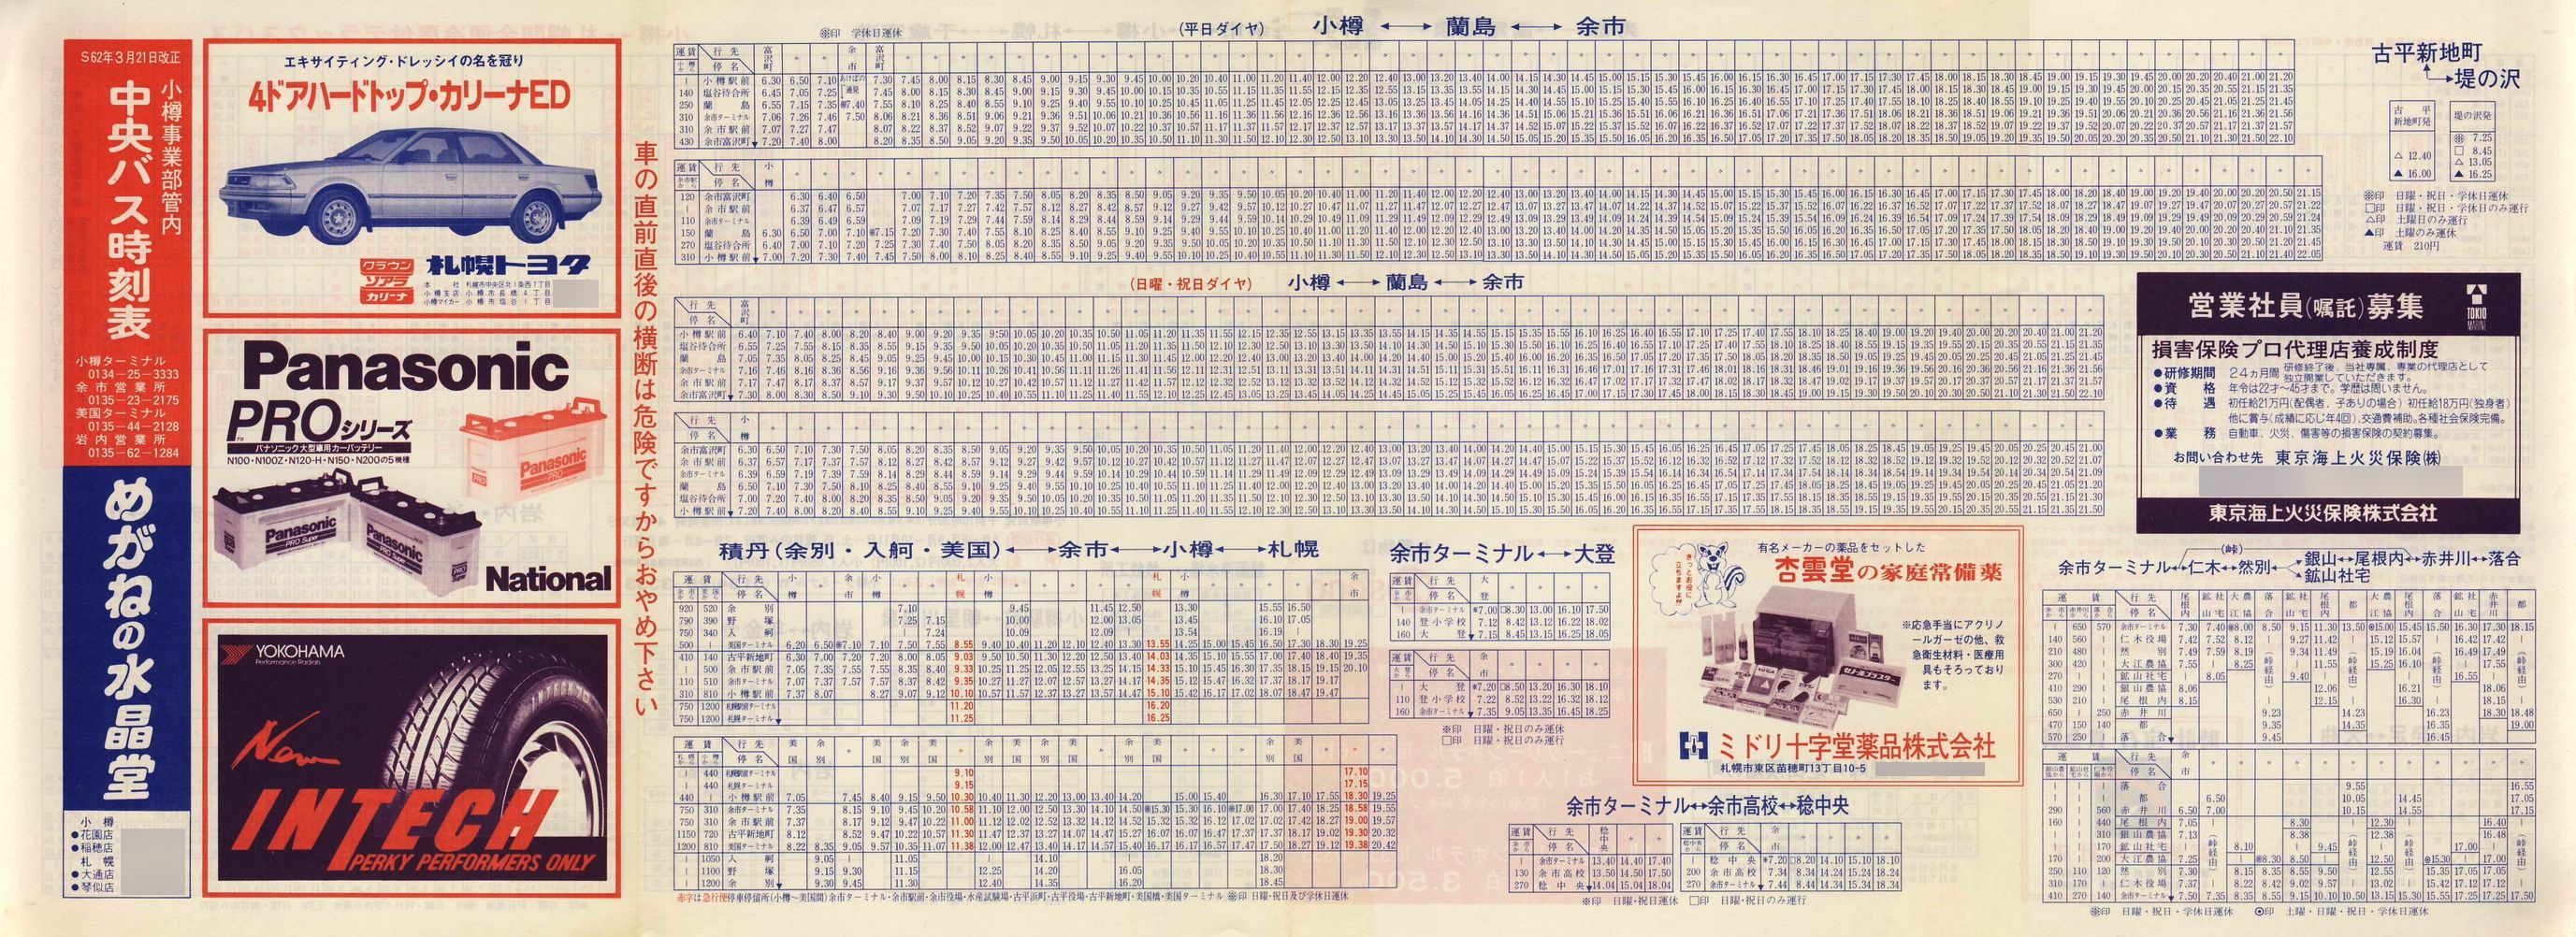 1987-03-21改正_北海道中央バス(小樽)_小樽事業部管内郊外線時刻表表面